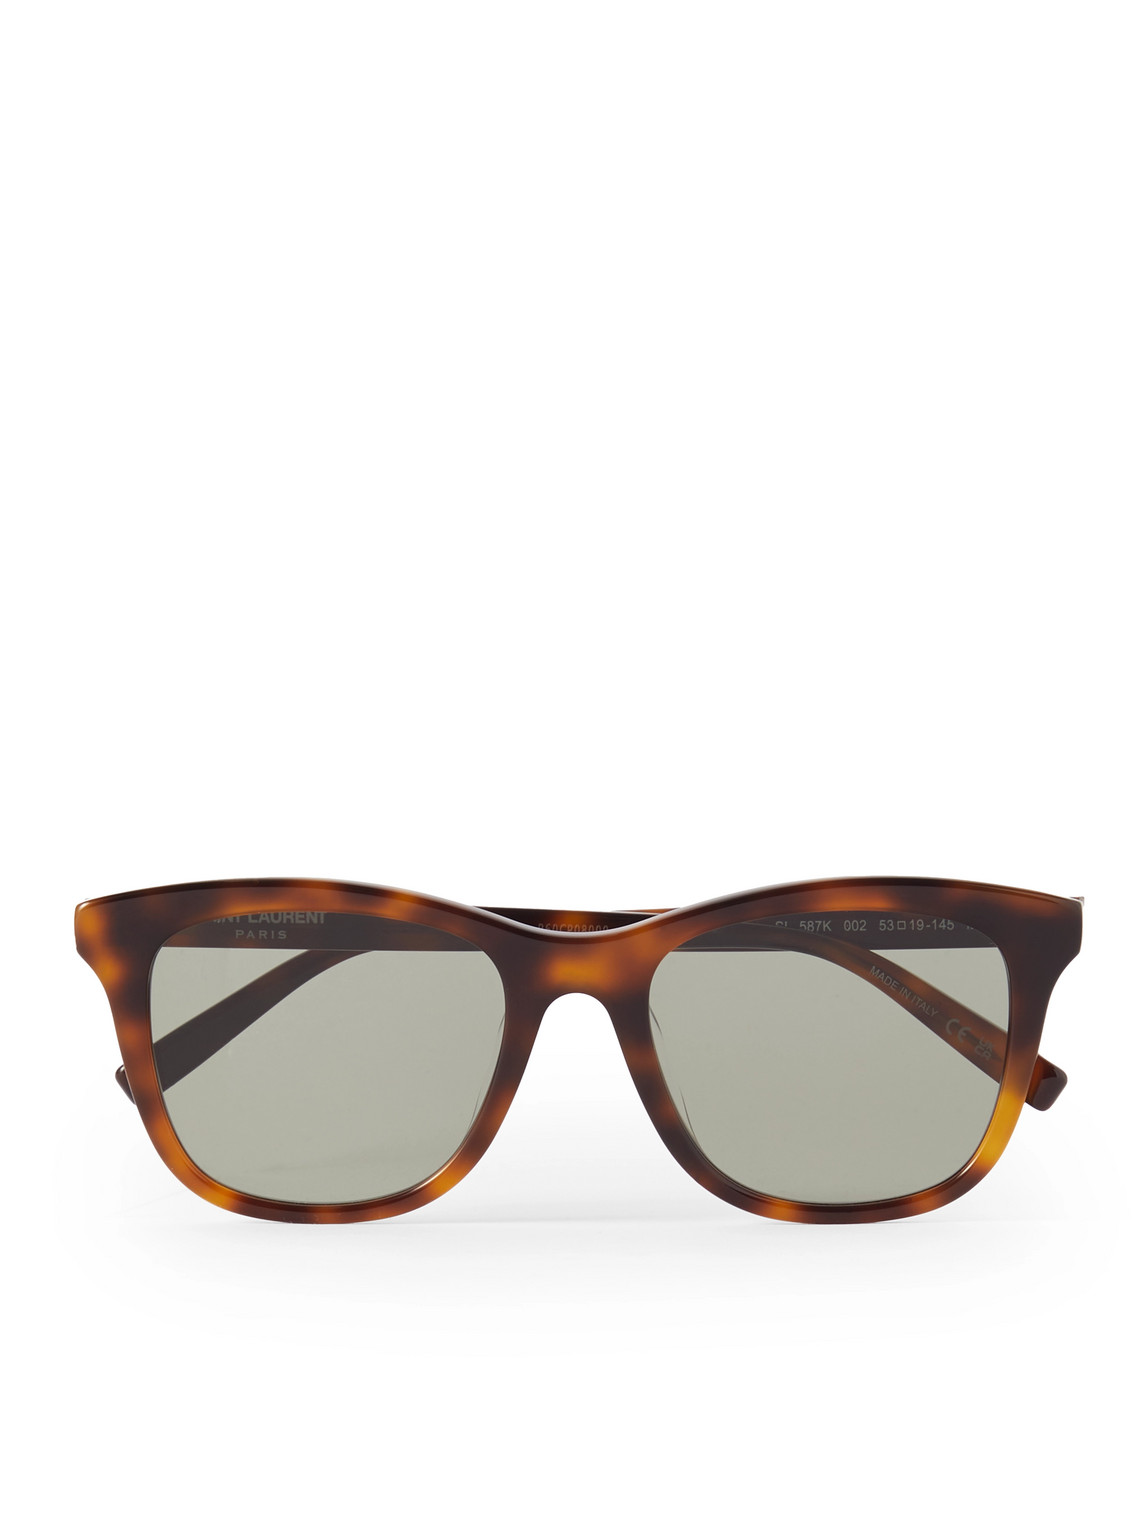 SAINT LAURENT - D-Frame Acetate Tortoiseshell Sunglasses - Men - Tortoiseshell von SAINT LAURENT